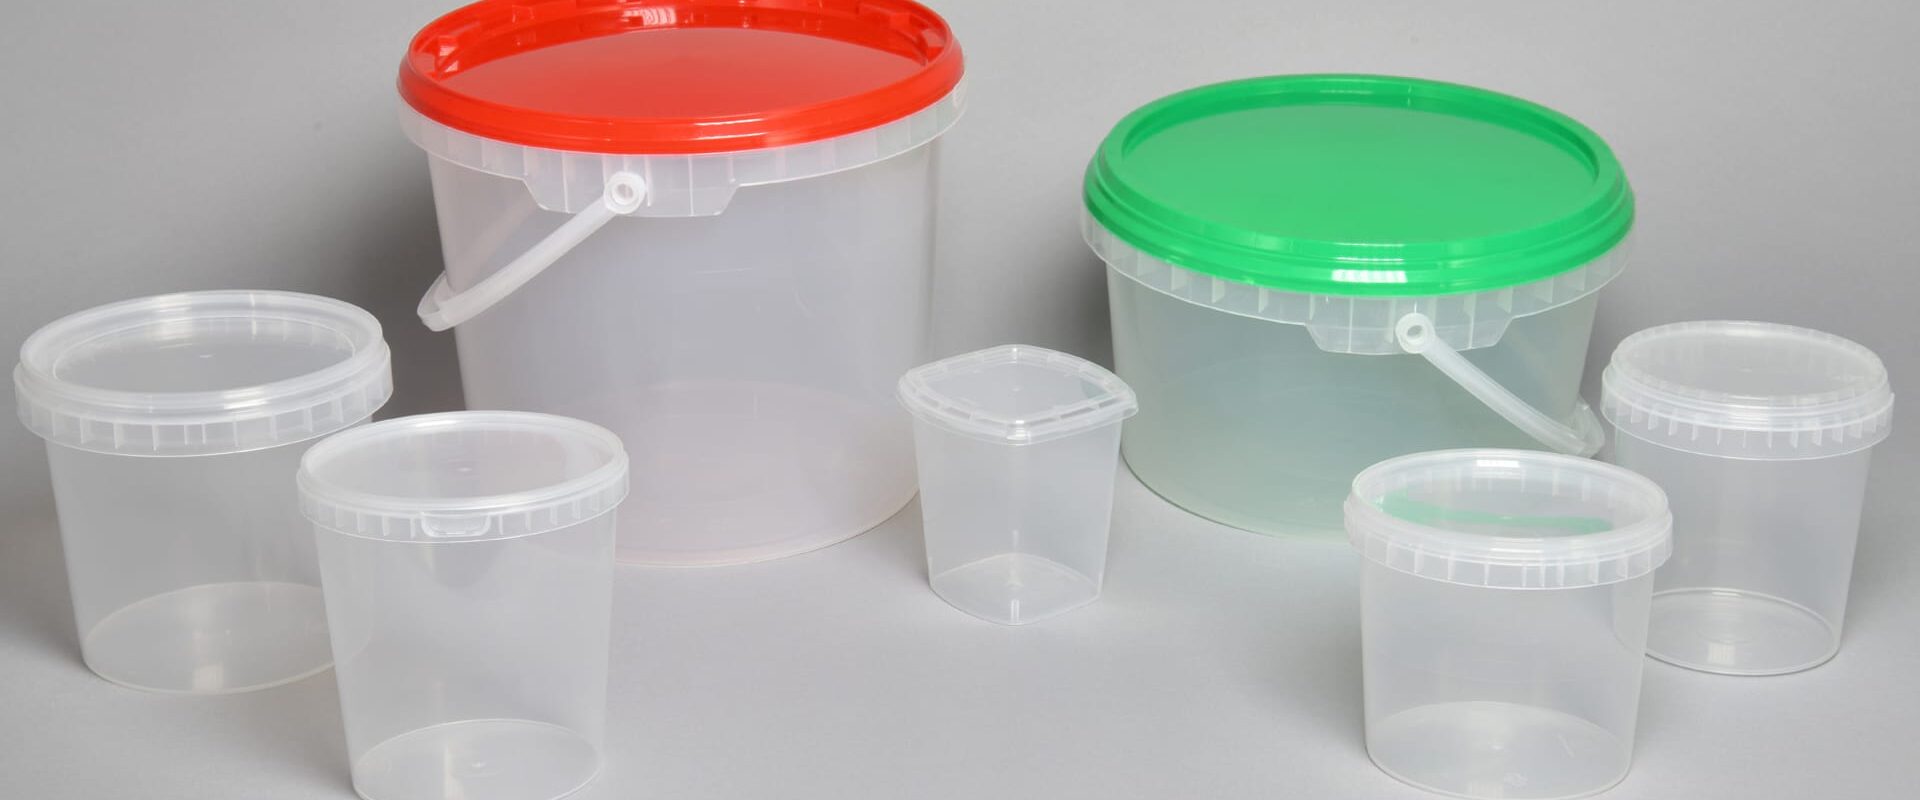 Contenitori in plastica per conserve, barattoli e secchi